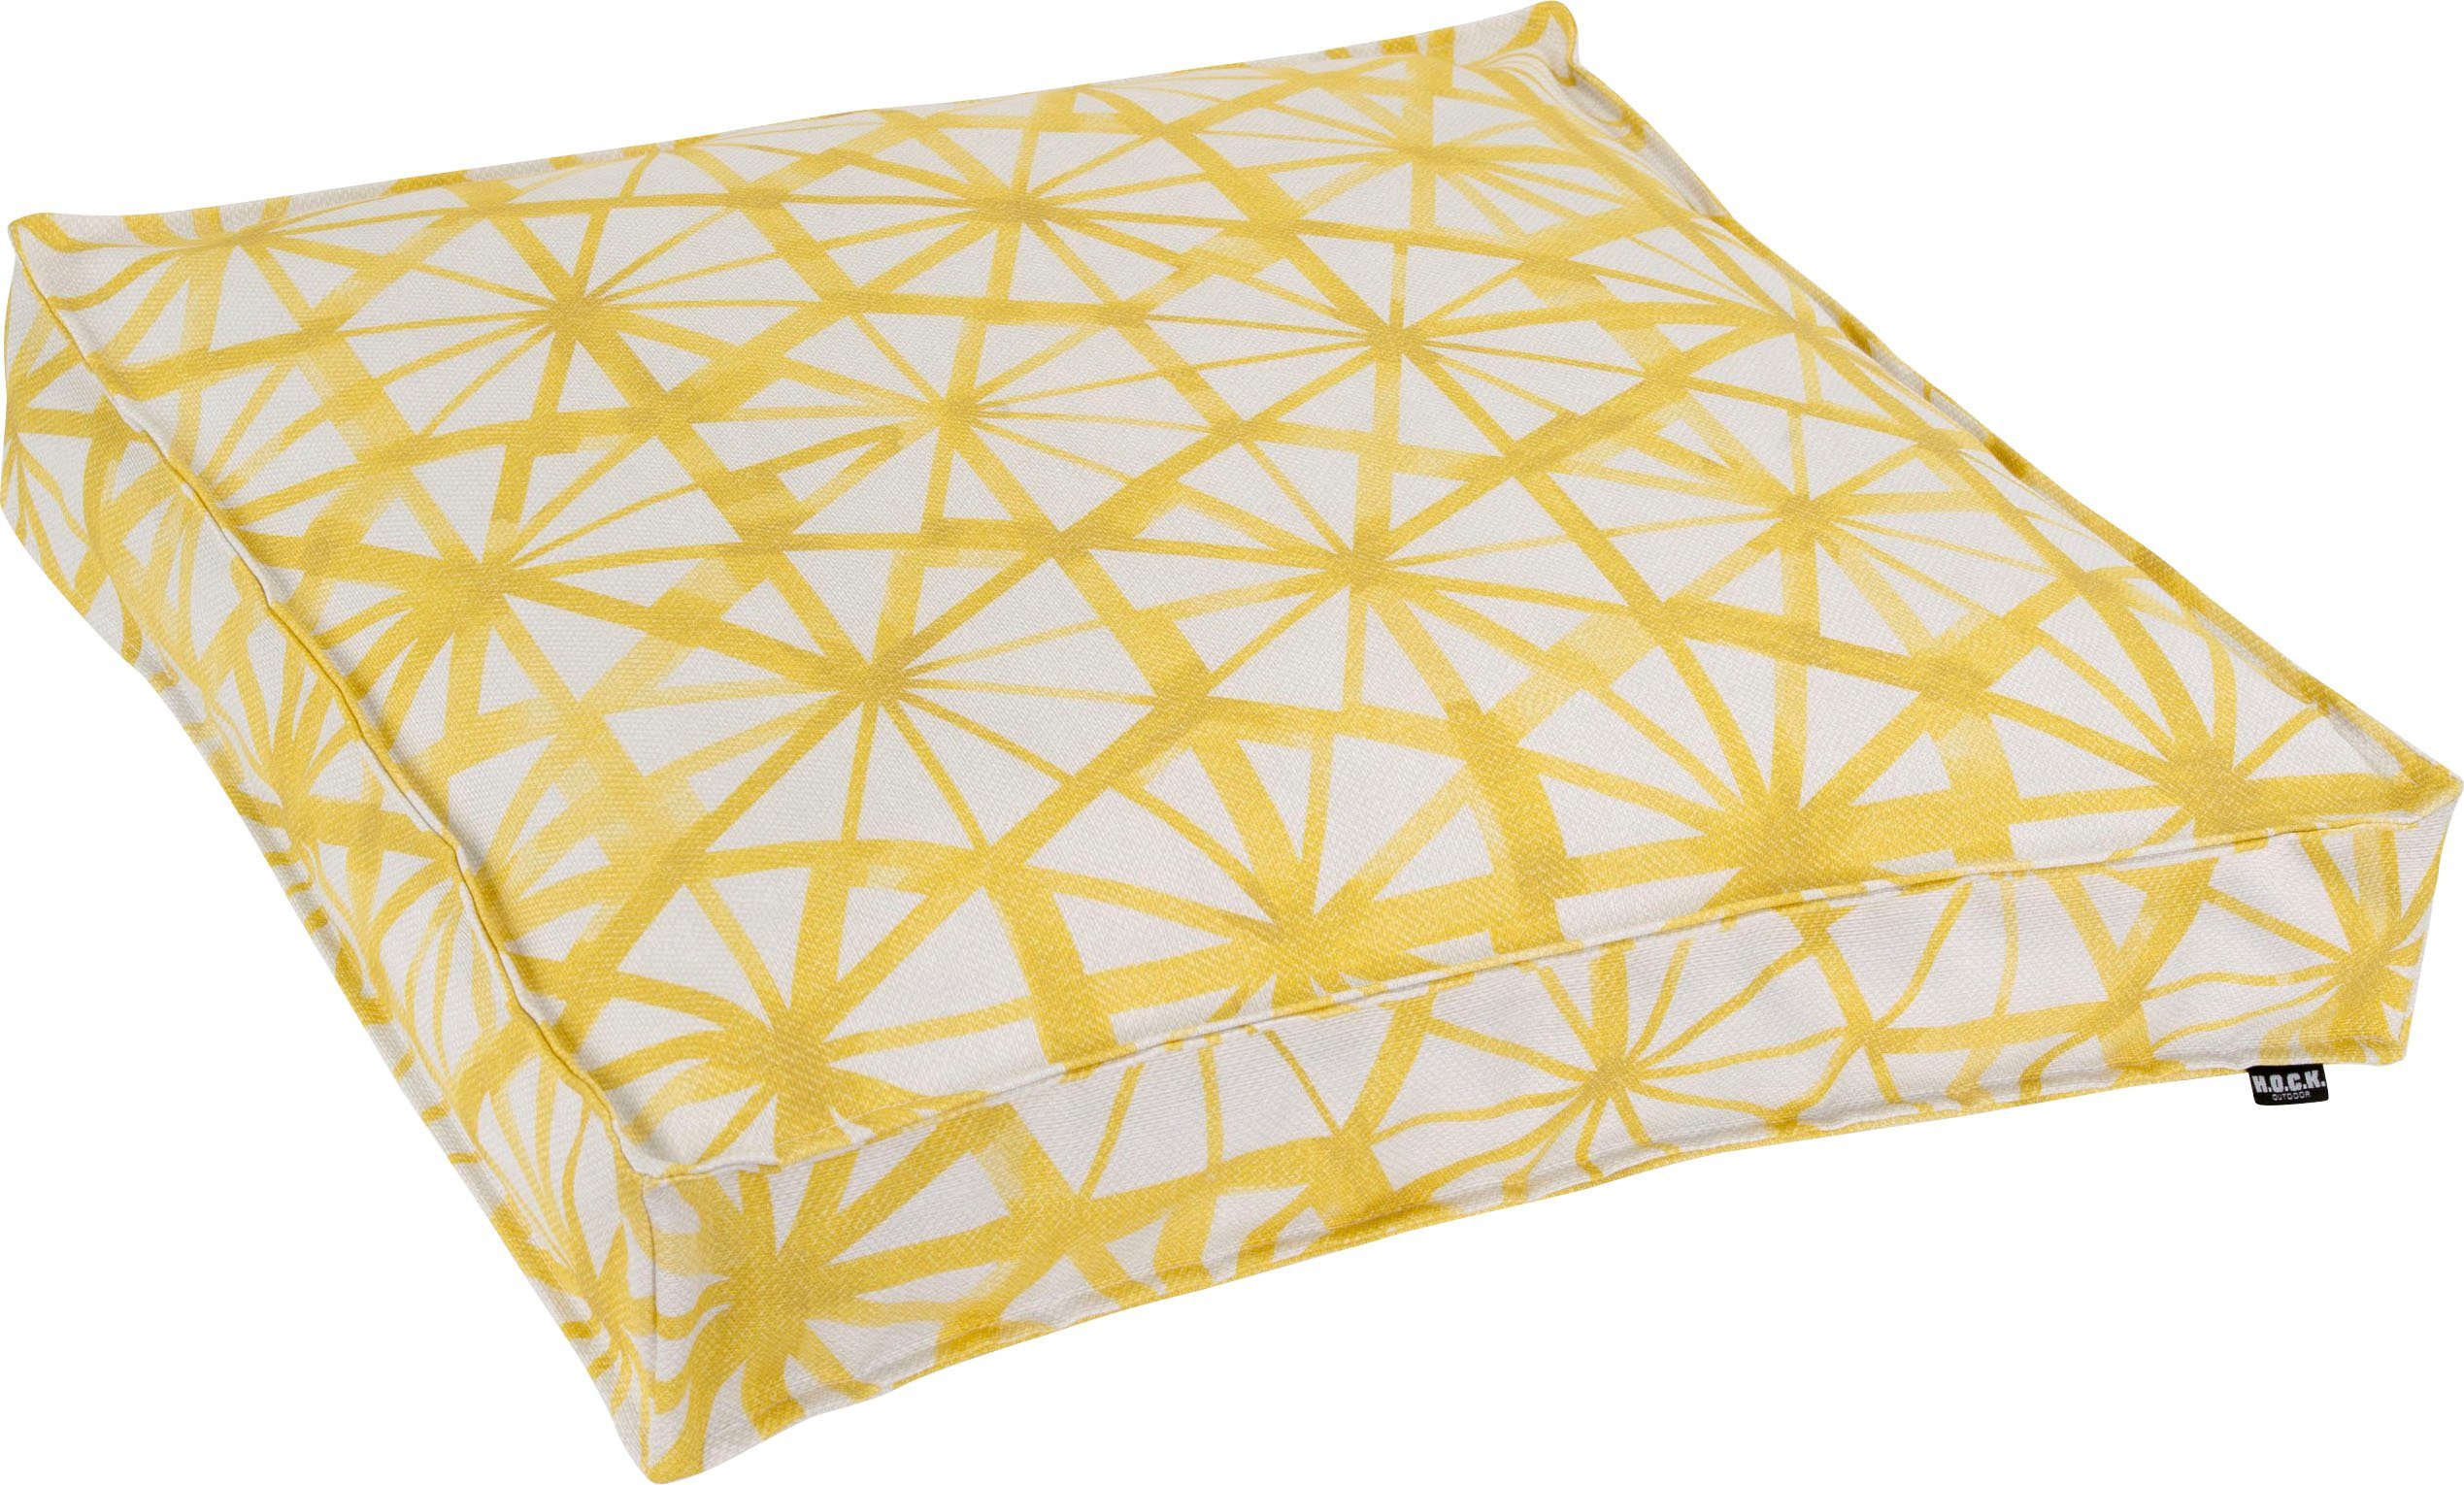 H.O.C.K. Bodenkissen Kami, gelb geometrischen mit Muster